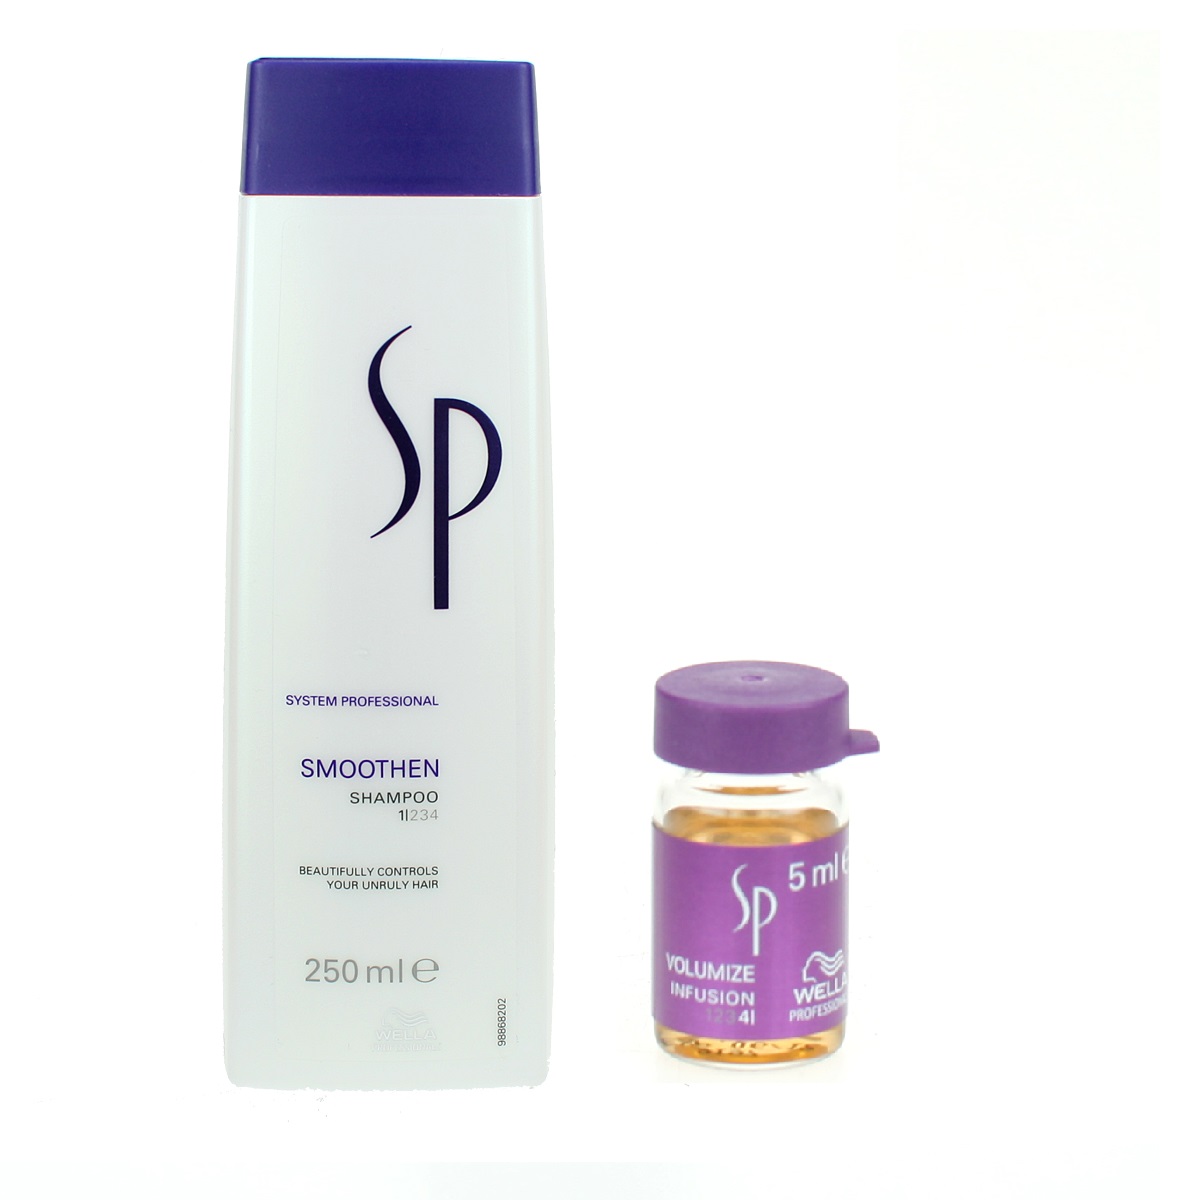 SP Smoothen | Zestaw wygładzający: szampon 250ml + esencja wygładzająca 5ml